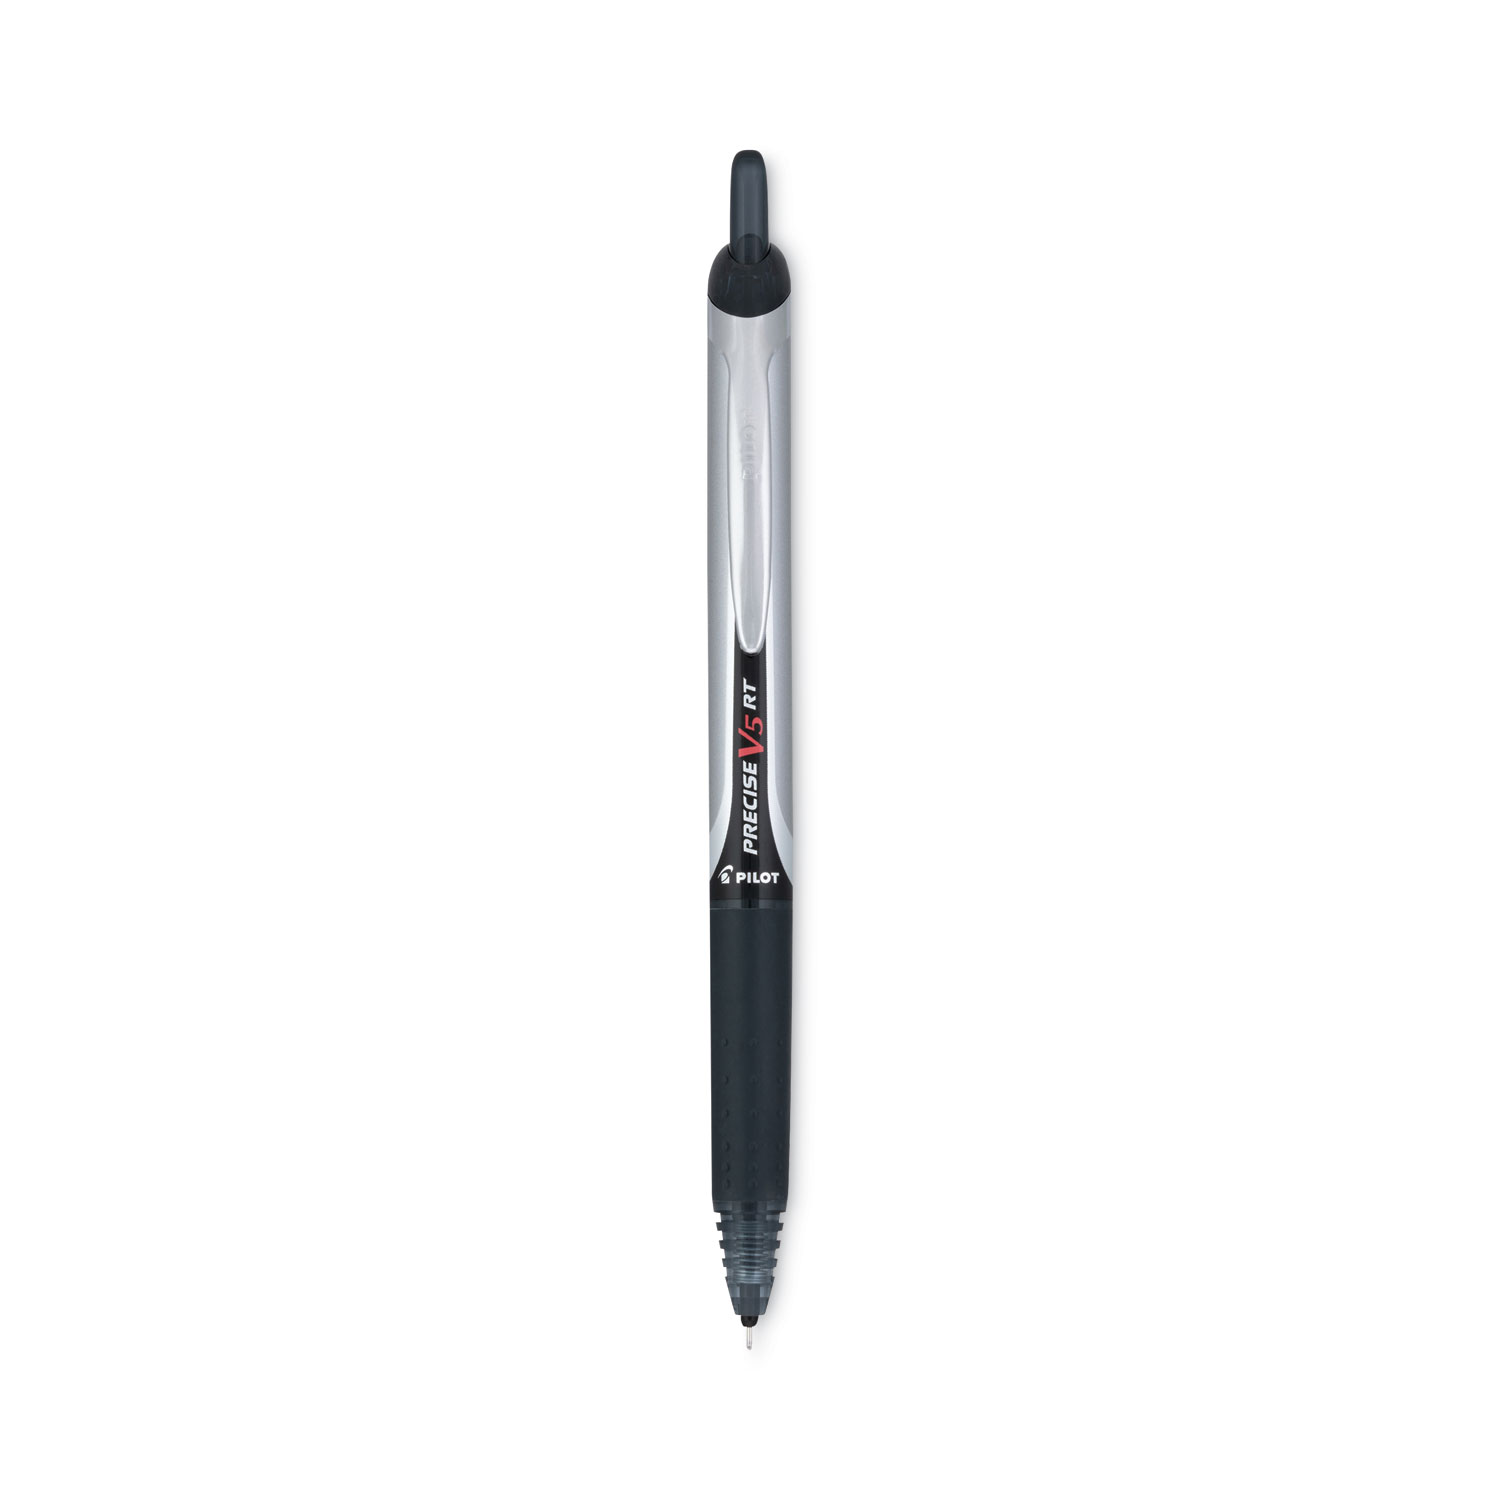 BLACK INK ULTRA Fine Point Retractable Fine Point Unique Pens